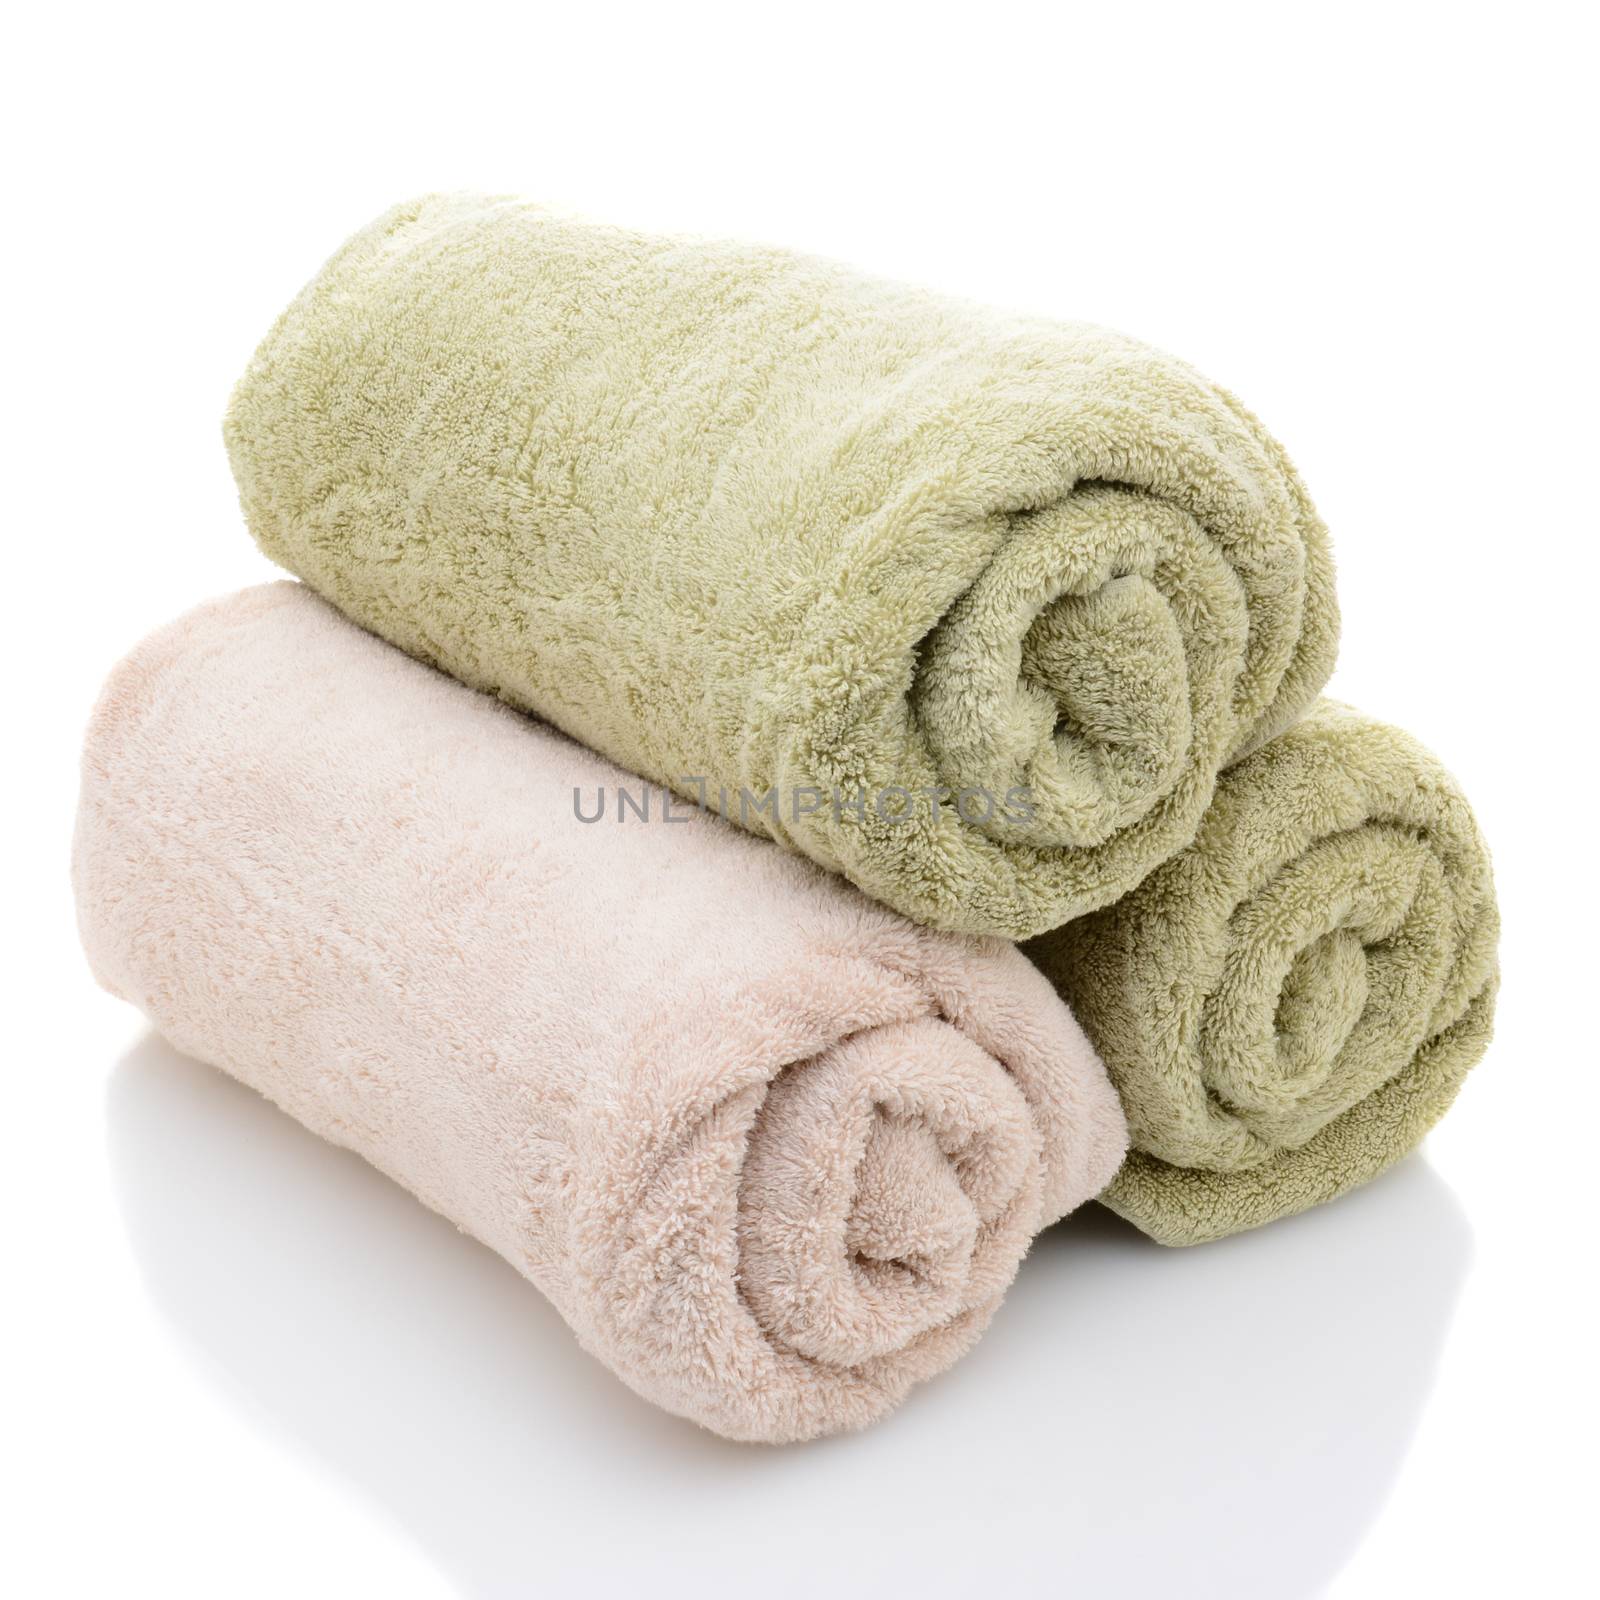 Three Rolled Bath Towels by sCukrov